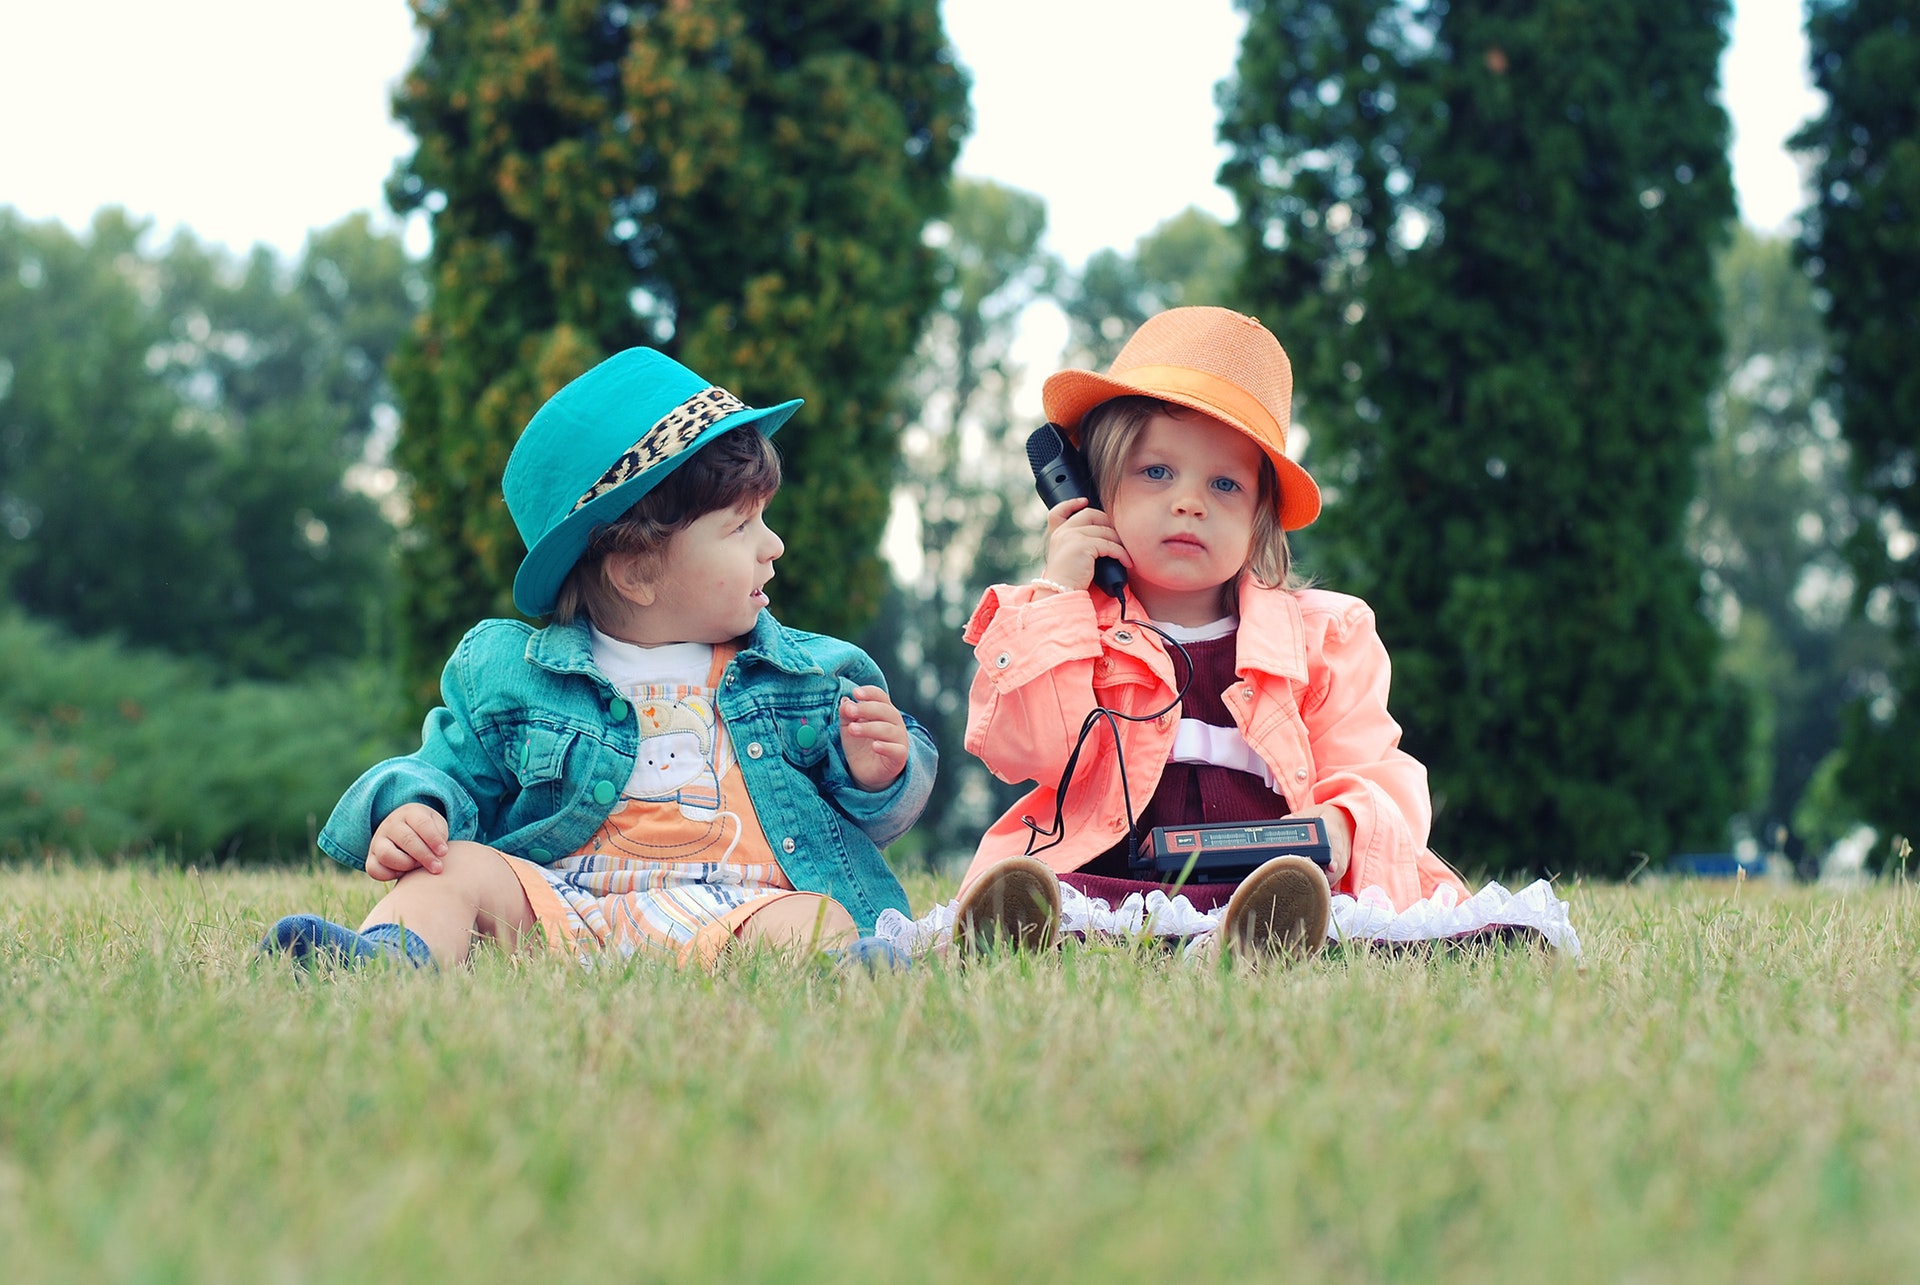 Twee kindjes met hoedjes in het gras spelen met speelgoedtelefoon